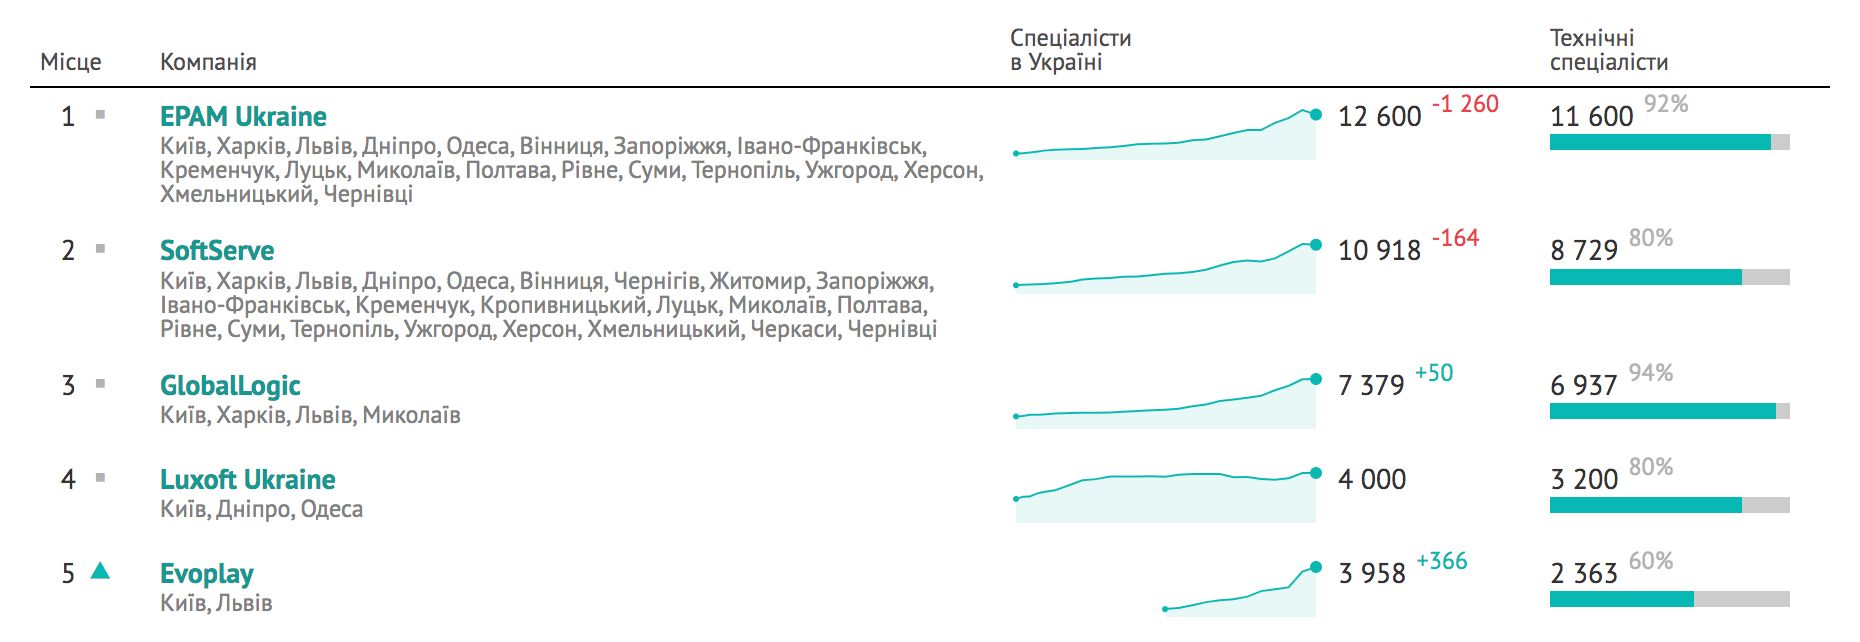 Загальна кількість ІТ-спеціалістів в Україні зменшилася майже на три тисячі – DOU